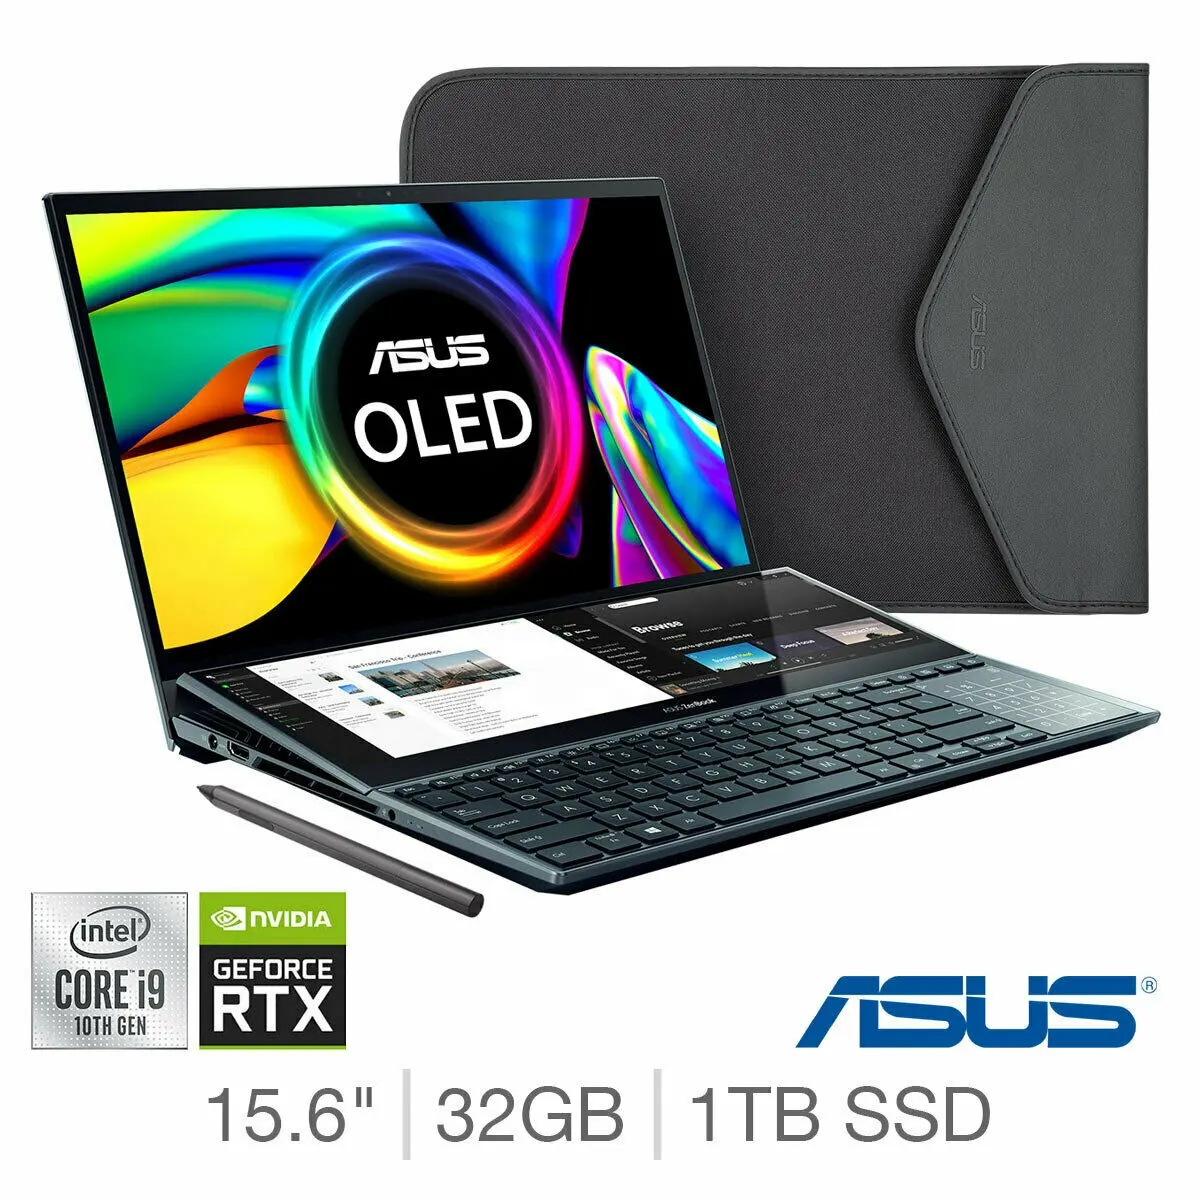 Оригинальный и совершенно новый запечатанный для ASU S ZenBook Duo, Intel Core i9, 32 ГБ оперативной памяти, 1 ТБ SSD, NVIDIA GeForce RTX 3070